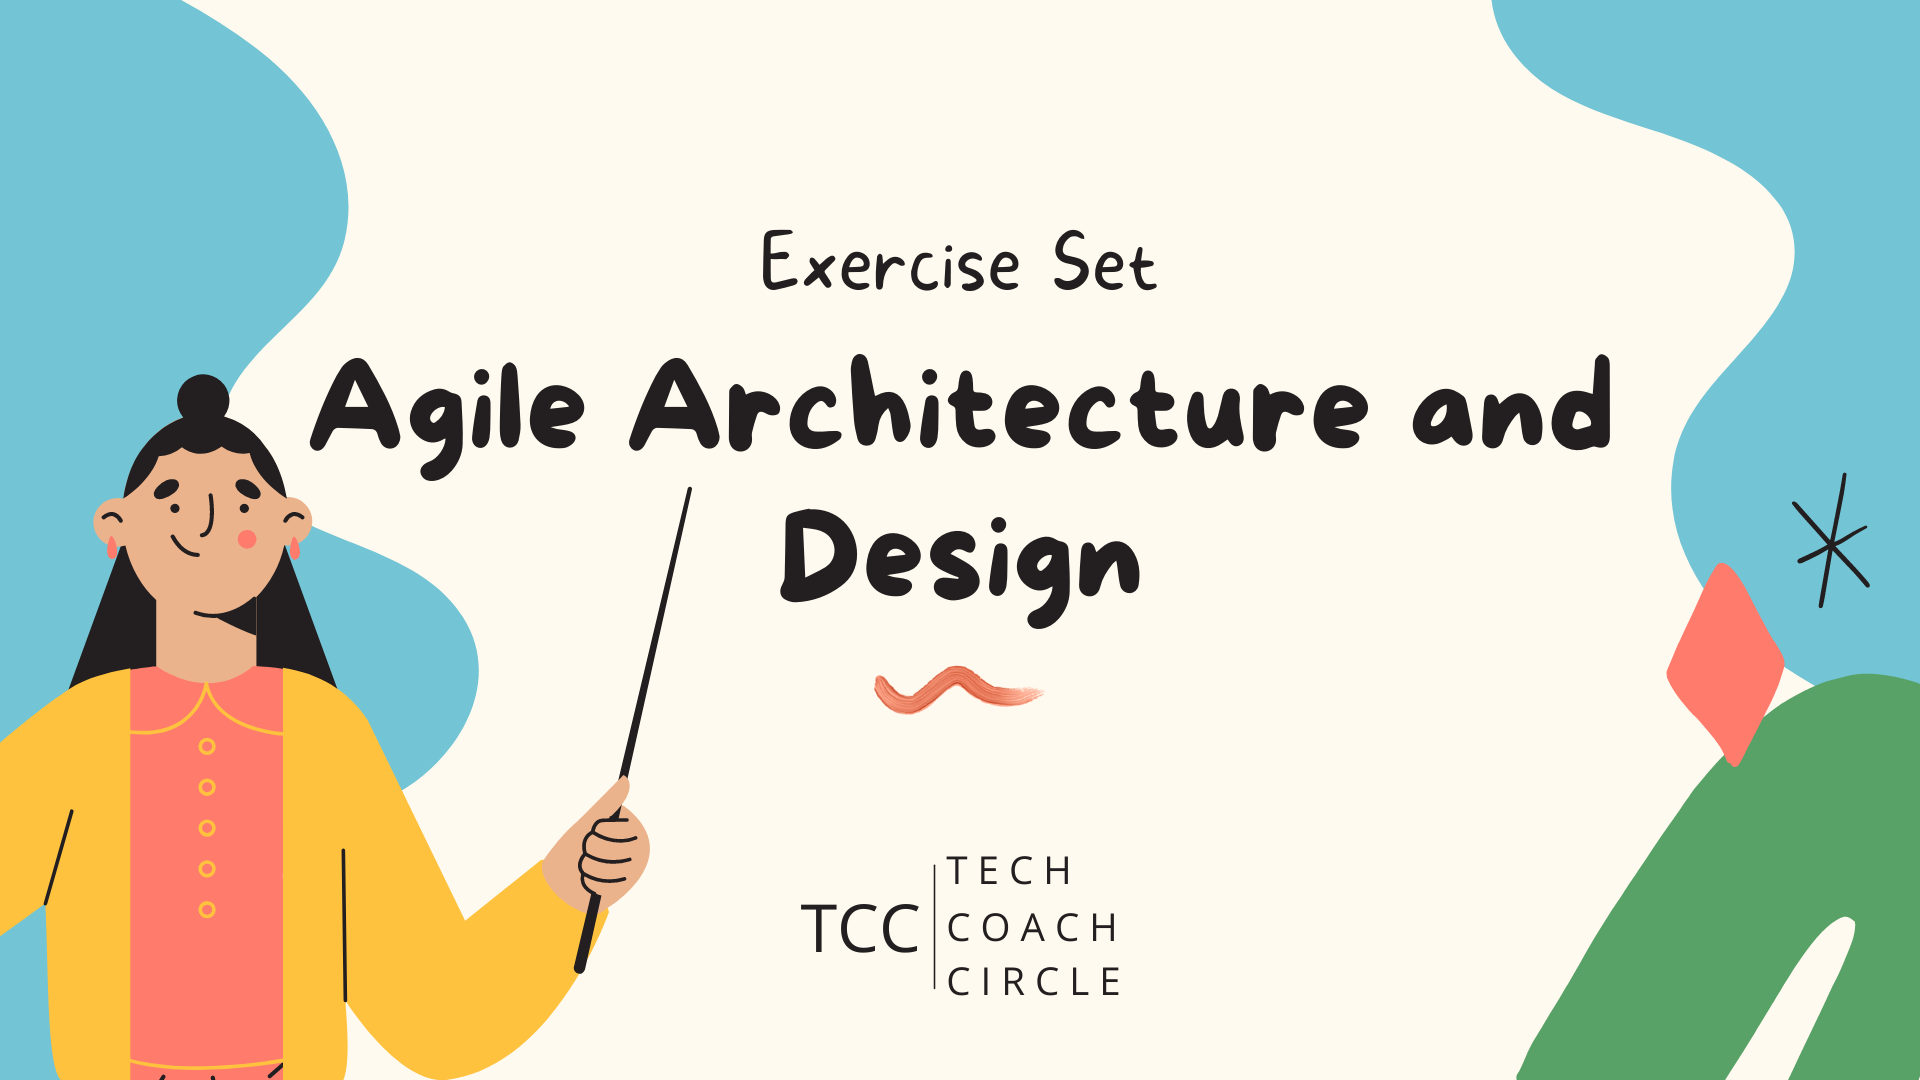 Agile Architecture and Design